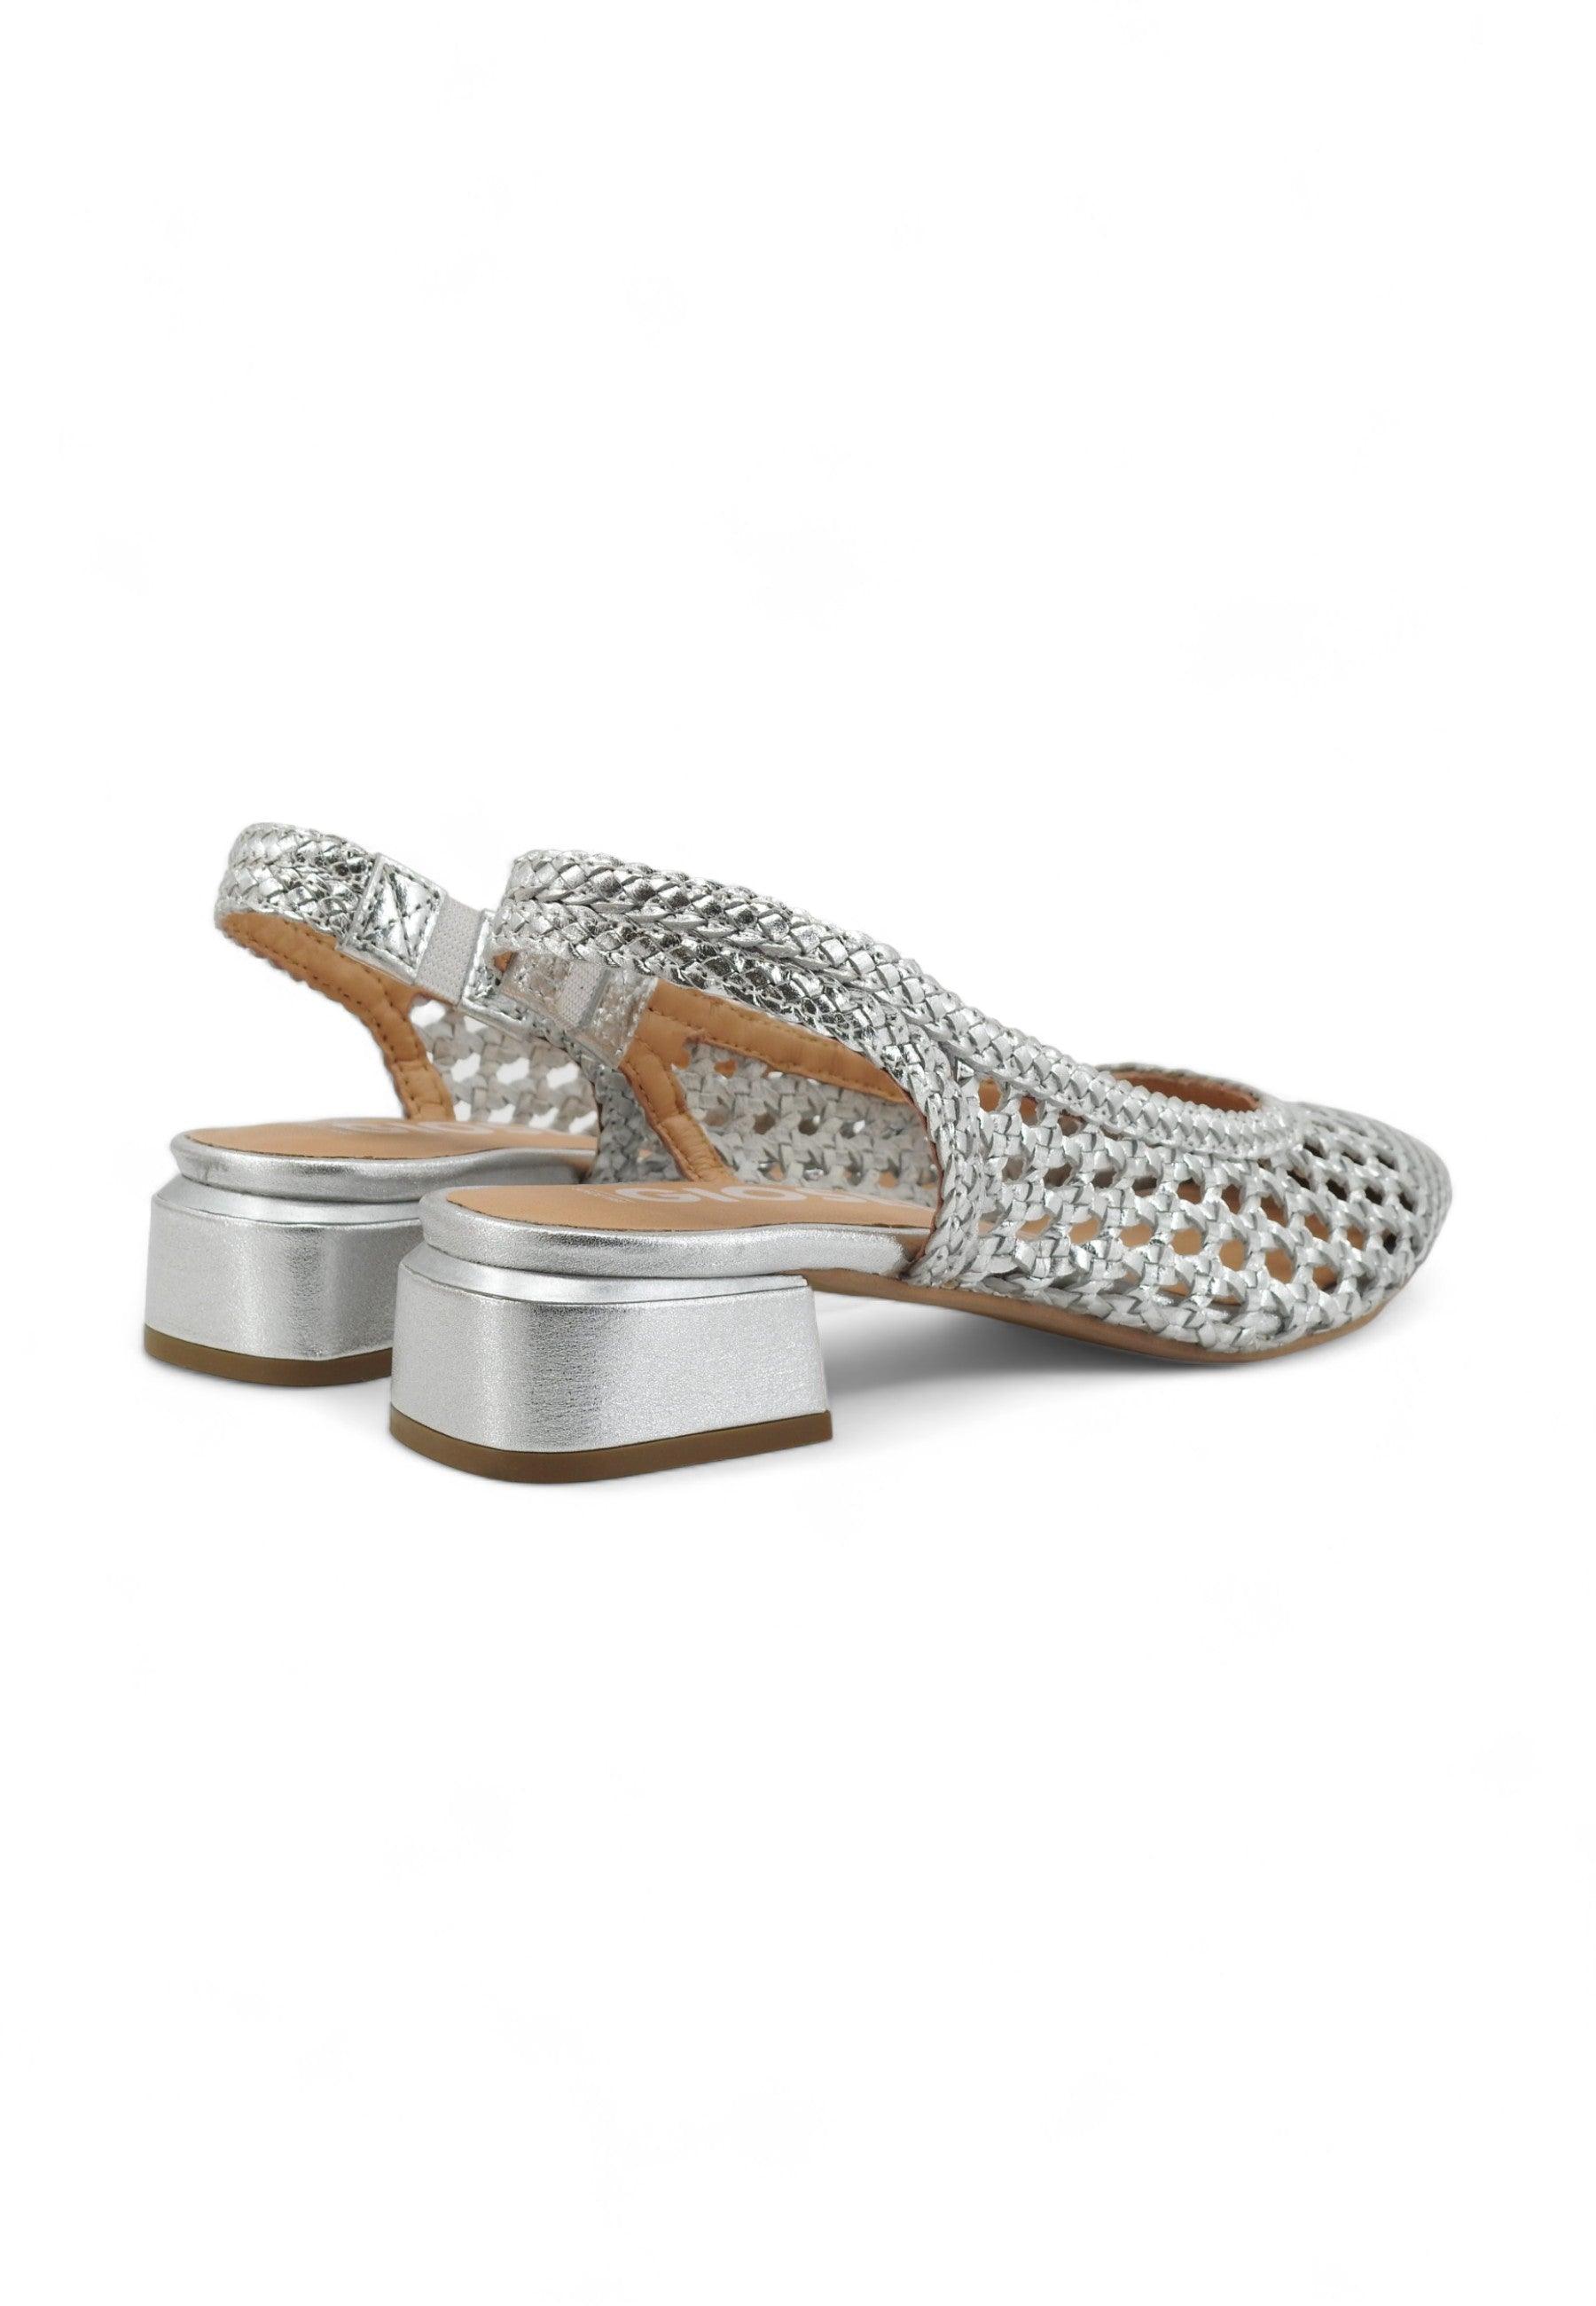 GIOSEPPO Piskove Sandalo Donna Silver 71185 - Sandrini Calzature e Abbigliamento